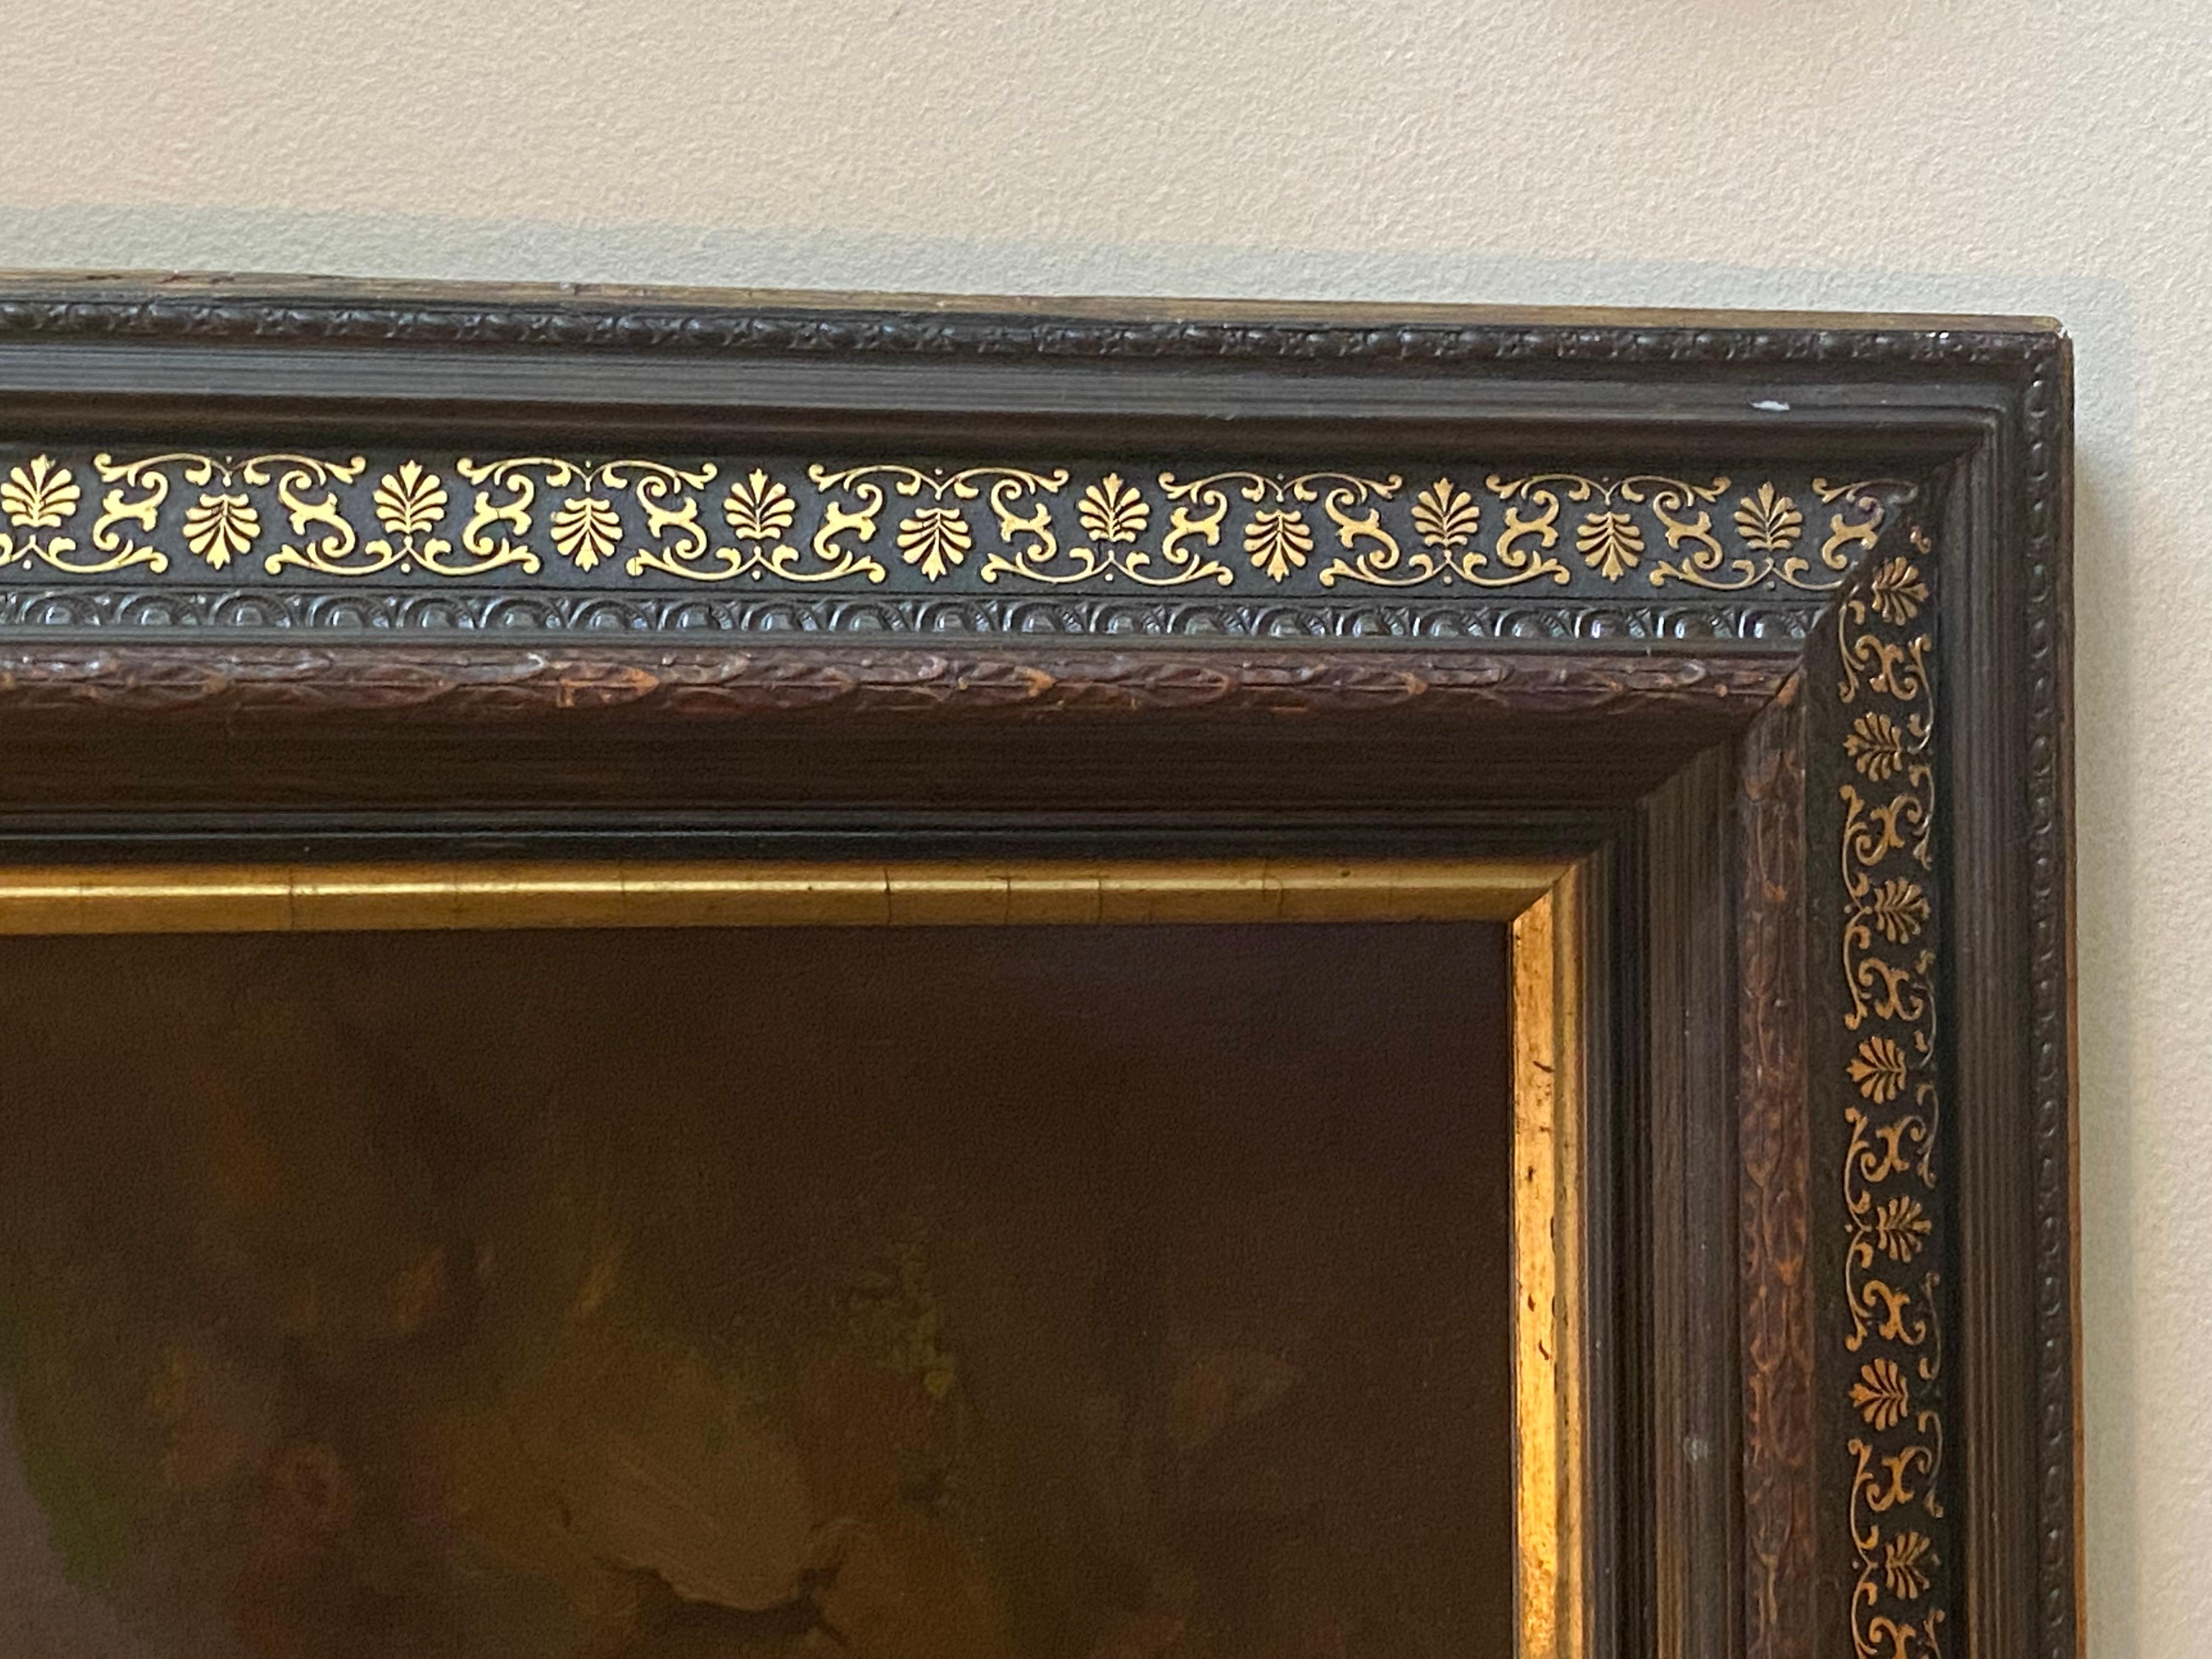 Öl auf Leinwand, diese wunderbare Panoramaansicht von Sorrento ist mit einer Initiale versehen und datiert, aber ich kann keinen Namen des Künstlers auf dem Werk finden.  Der Rahmen wurde mit großer Sorgfalt für dieses Werk angefertigt und ist